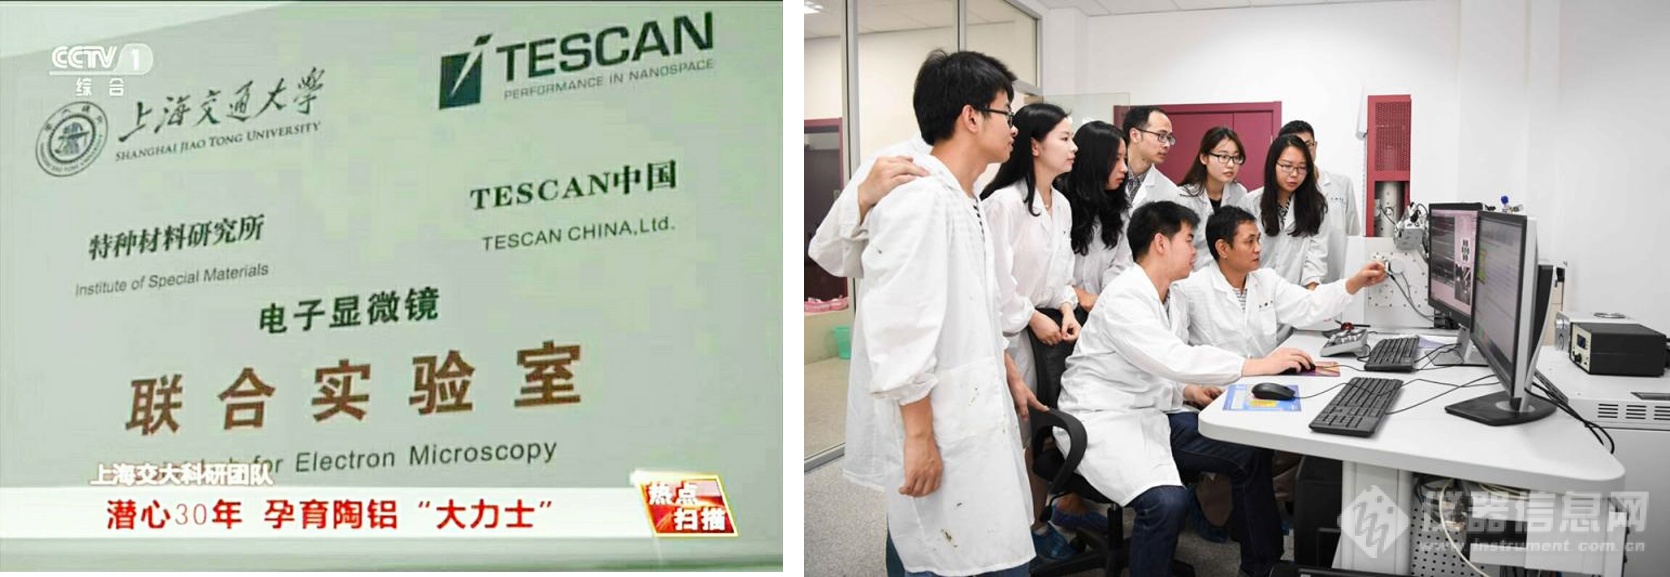 上海交通大学 · 特种材料研究所—TESCAN联合实验室 